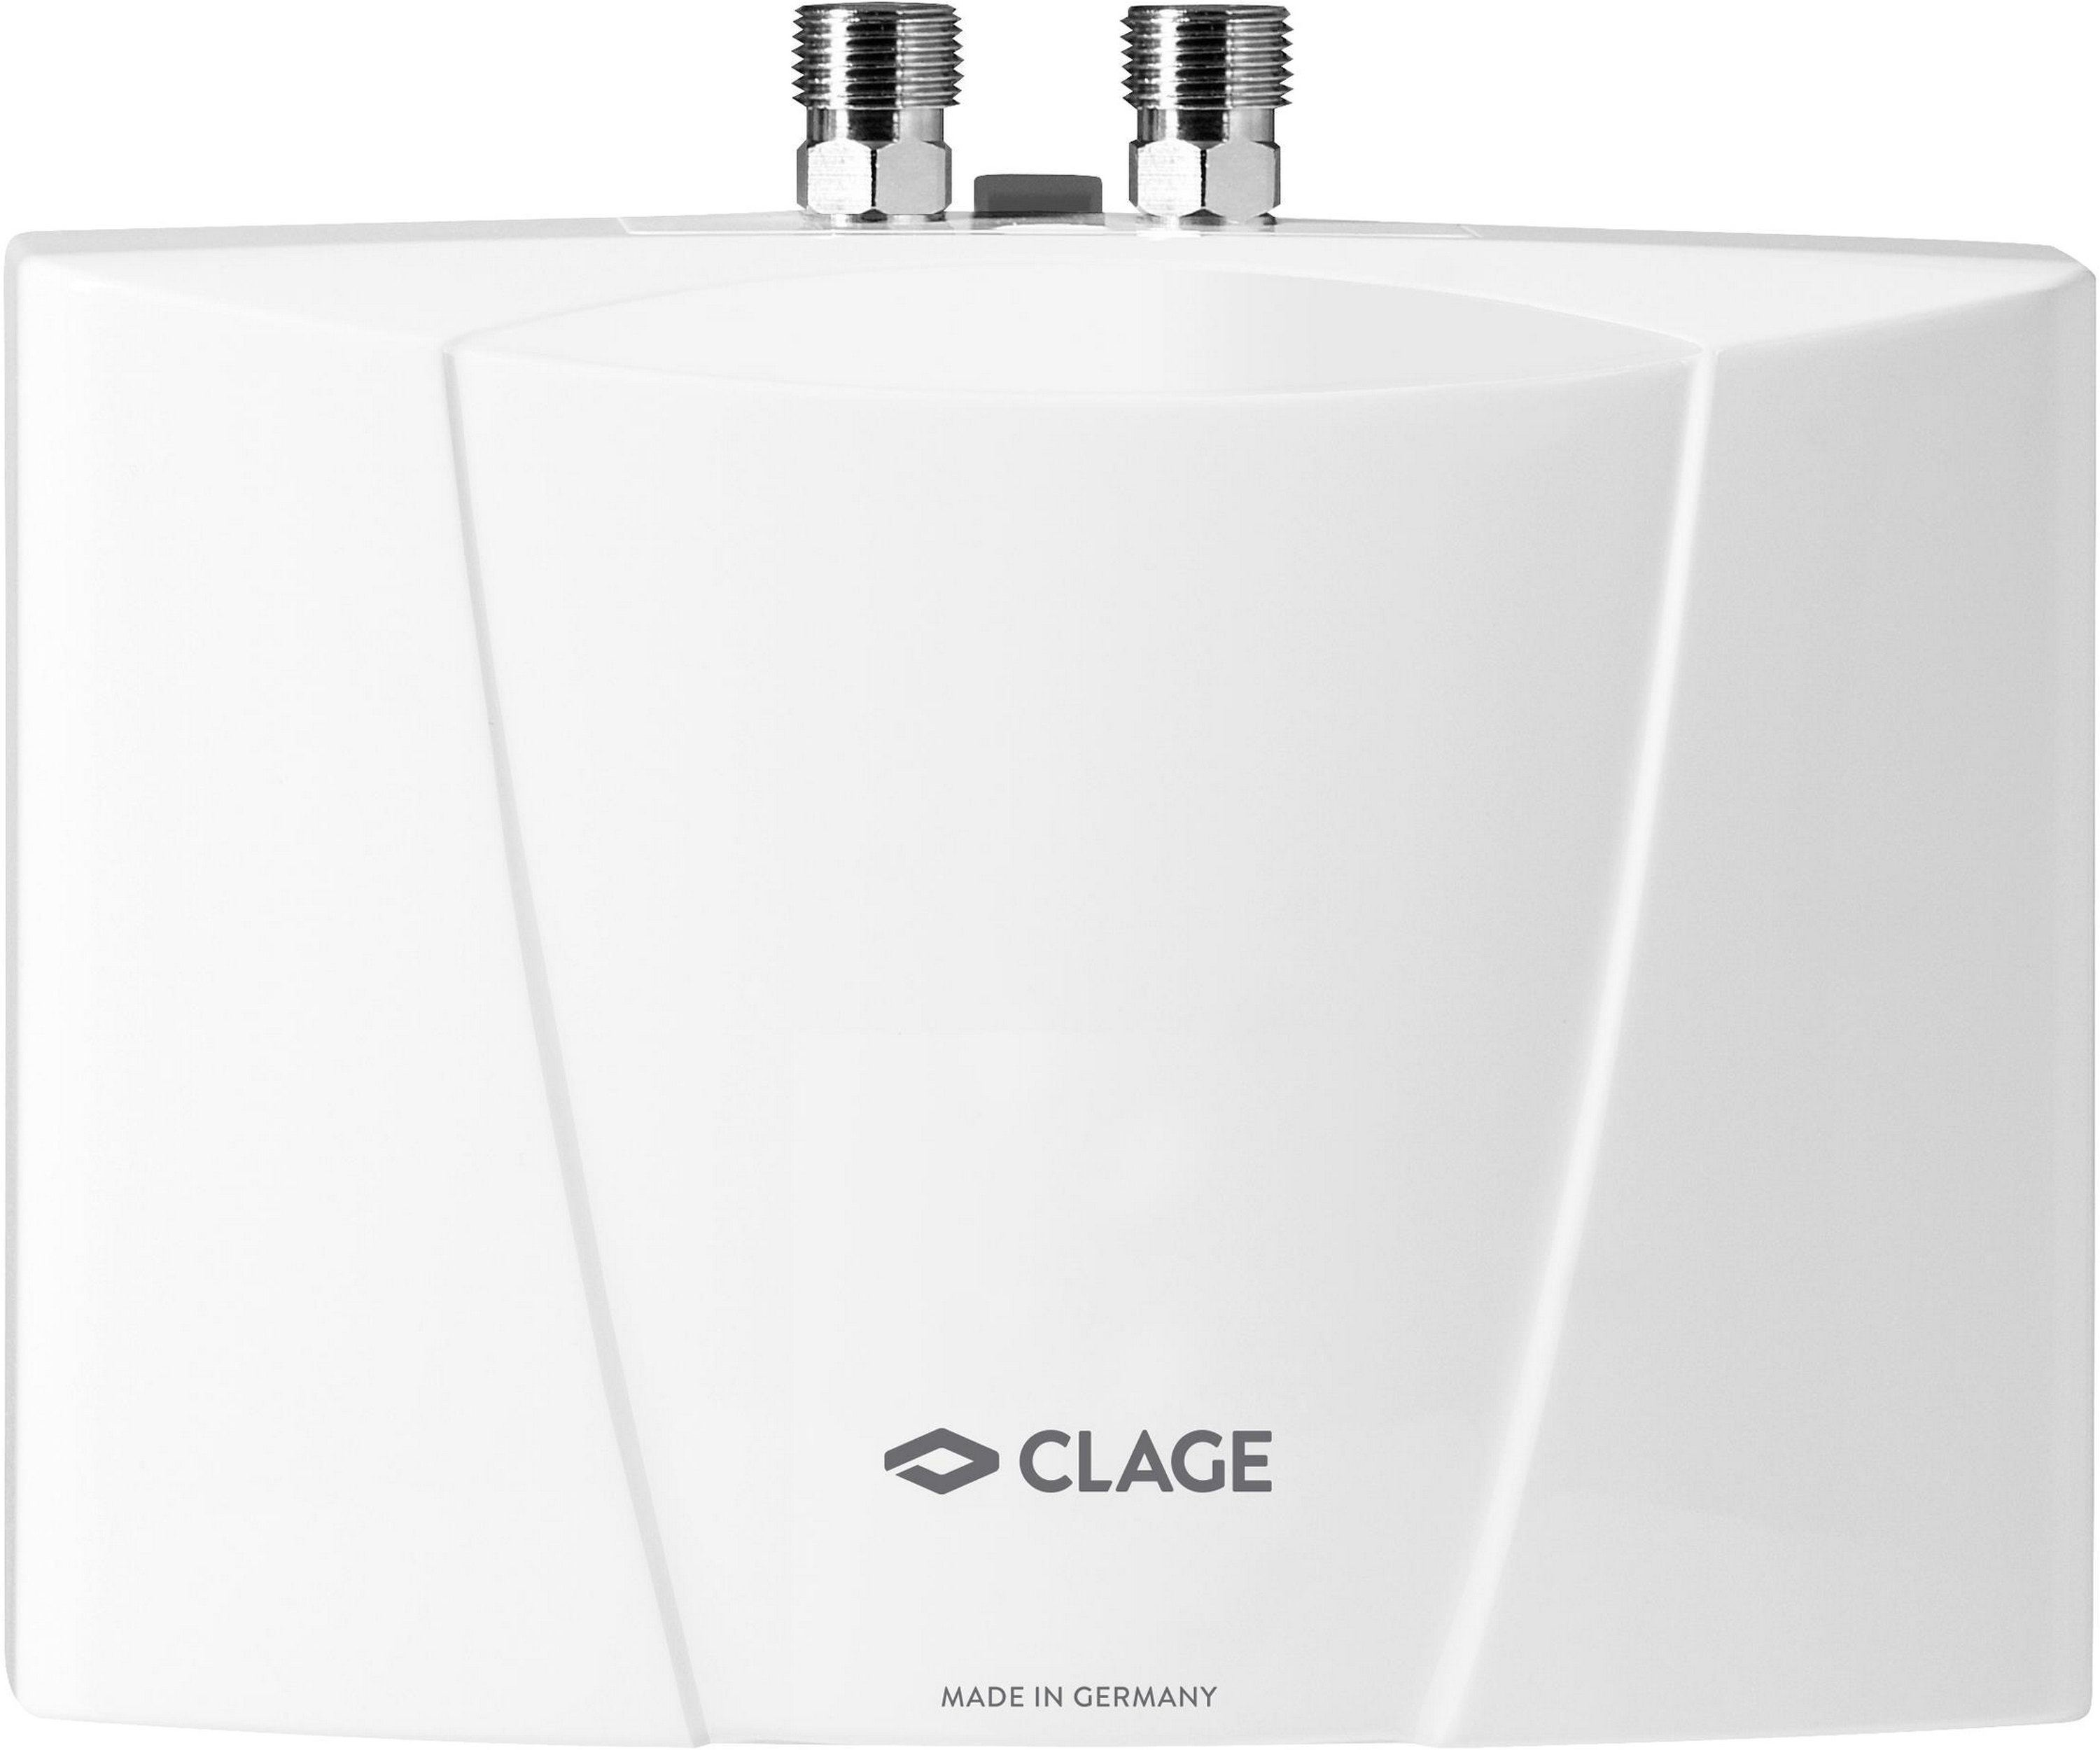 Проточный водонагреватель Clage MBH 4 в интернет-магазине, главное фото